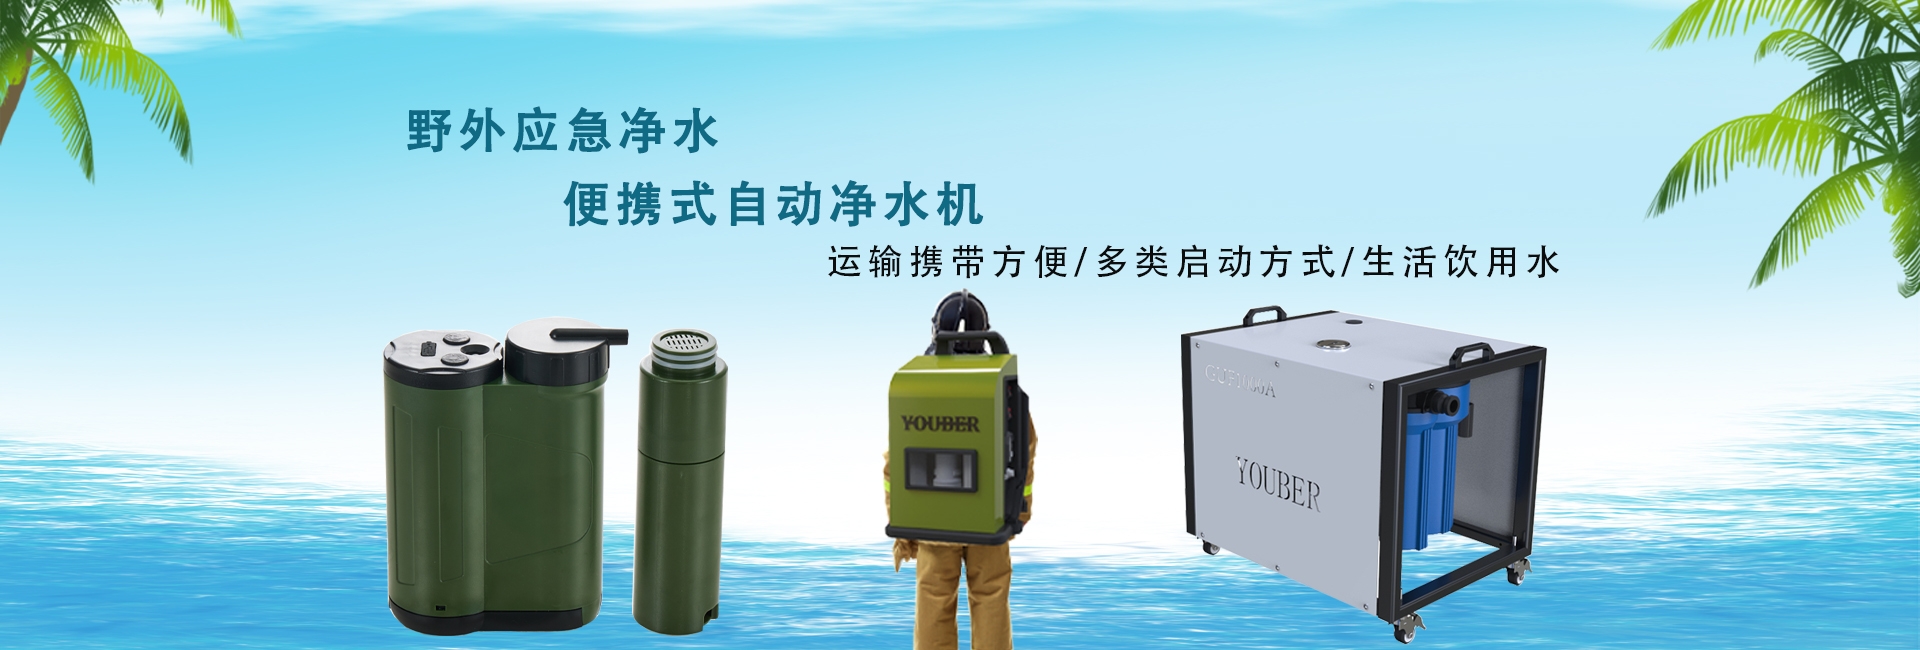 新航注册便携式自动净水设备